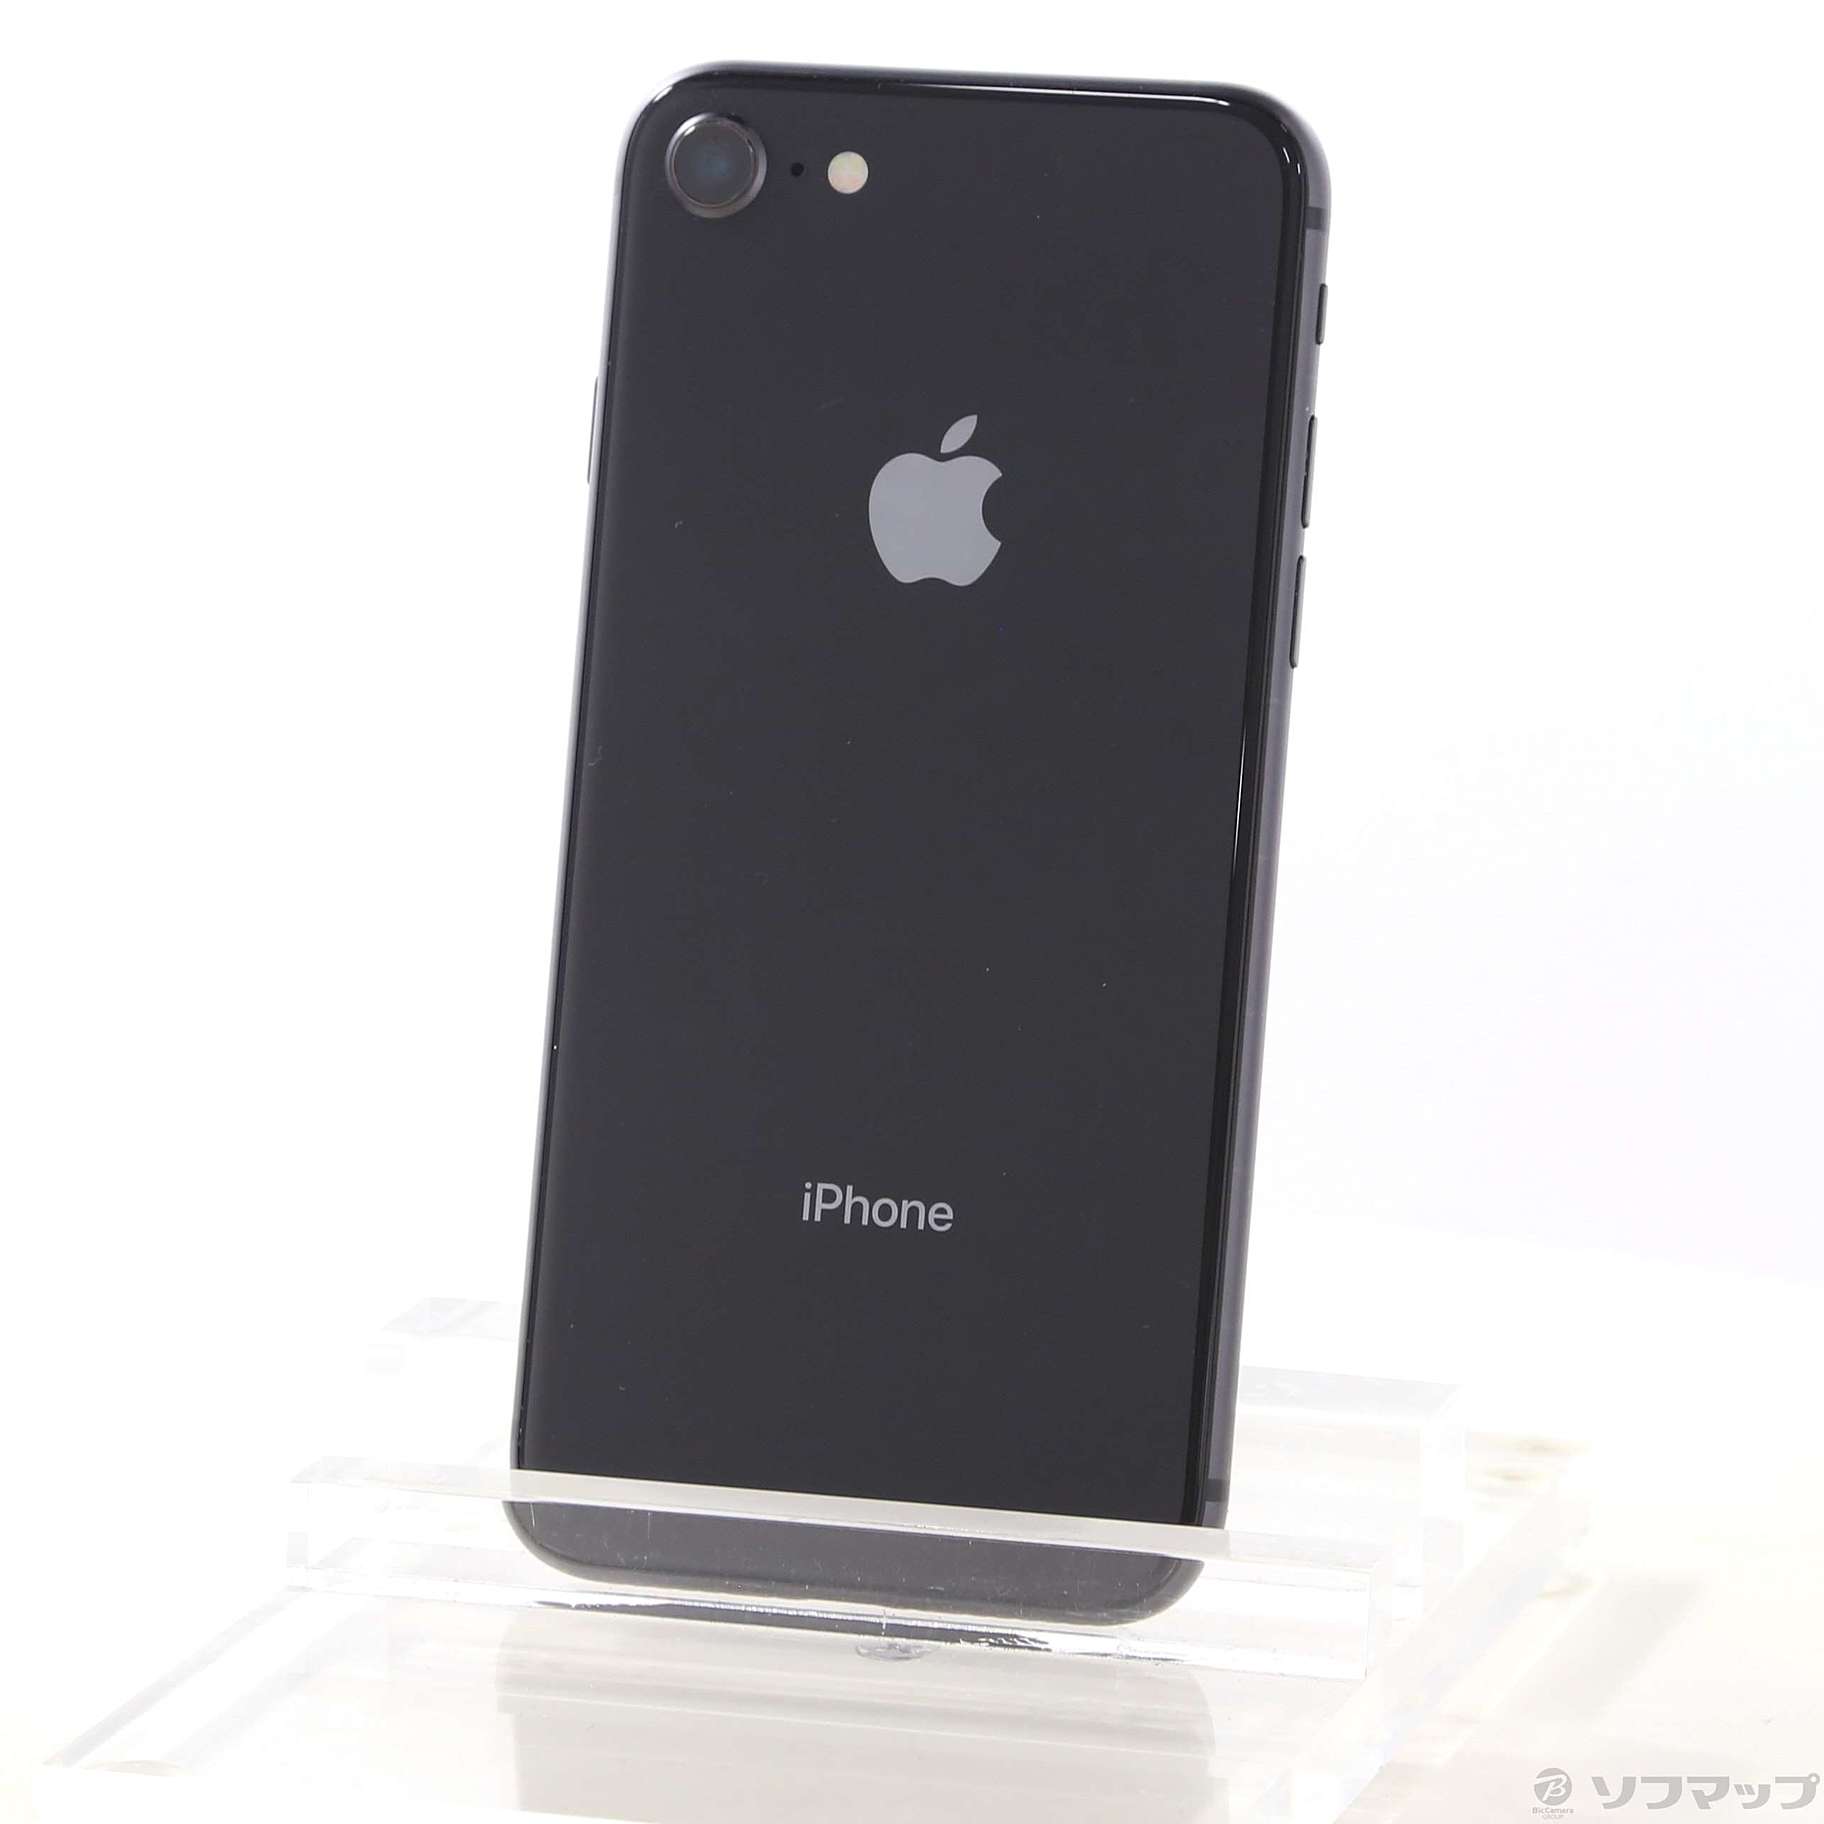 iPhone8 スペースグレイ 64GB | myglobaltax.com